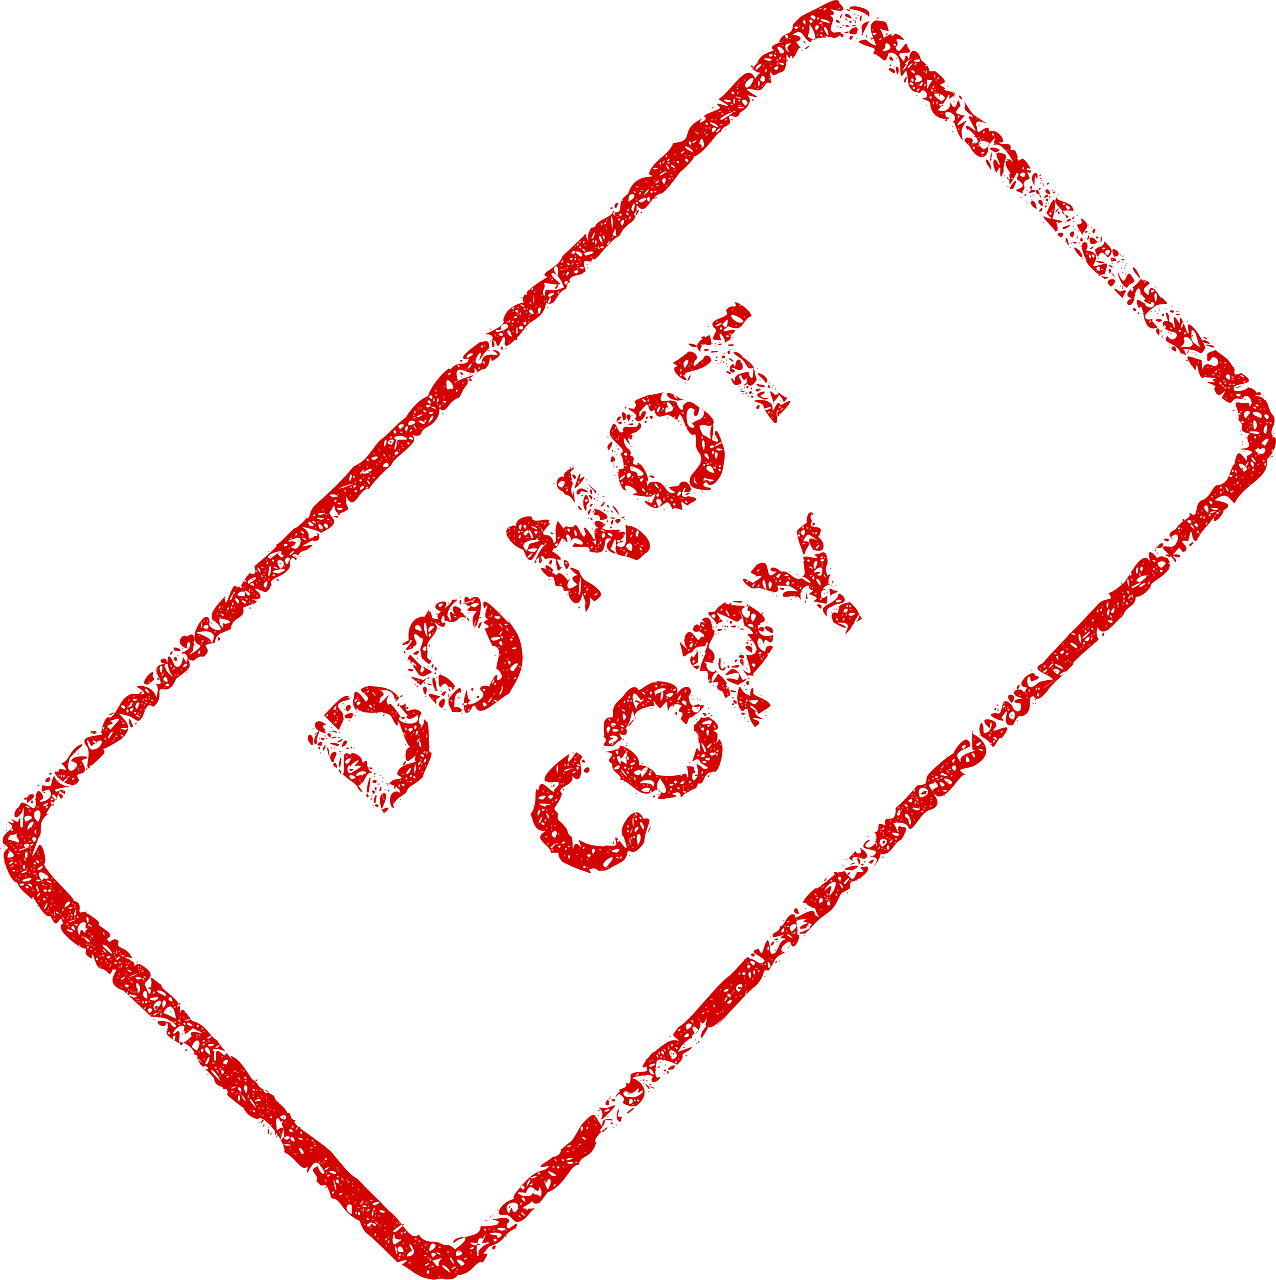 do not copy